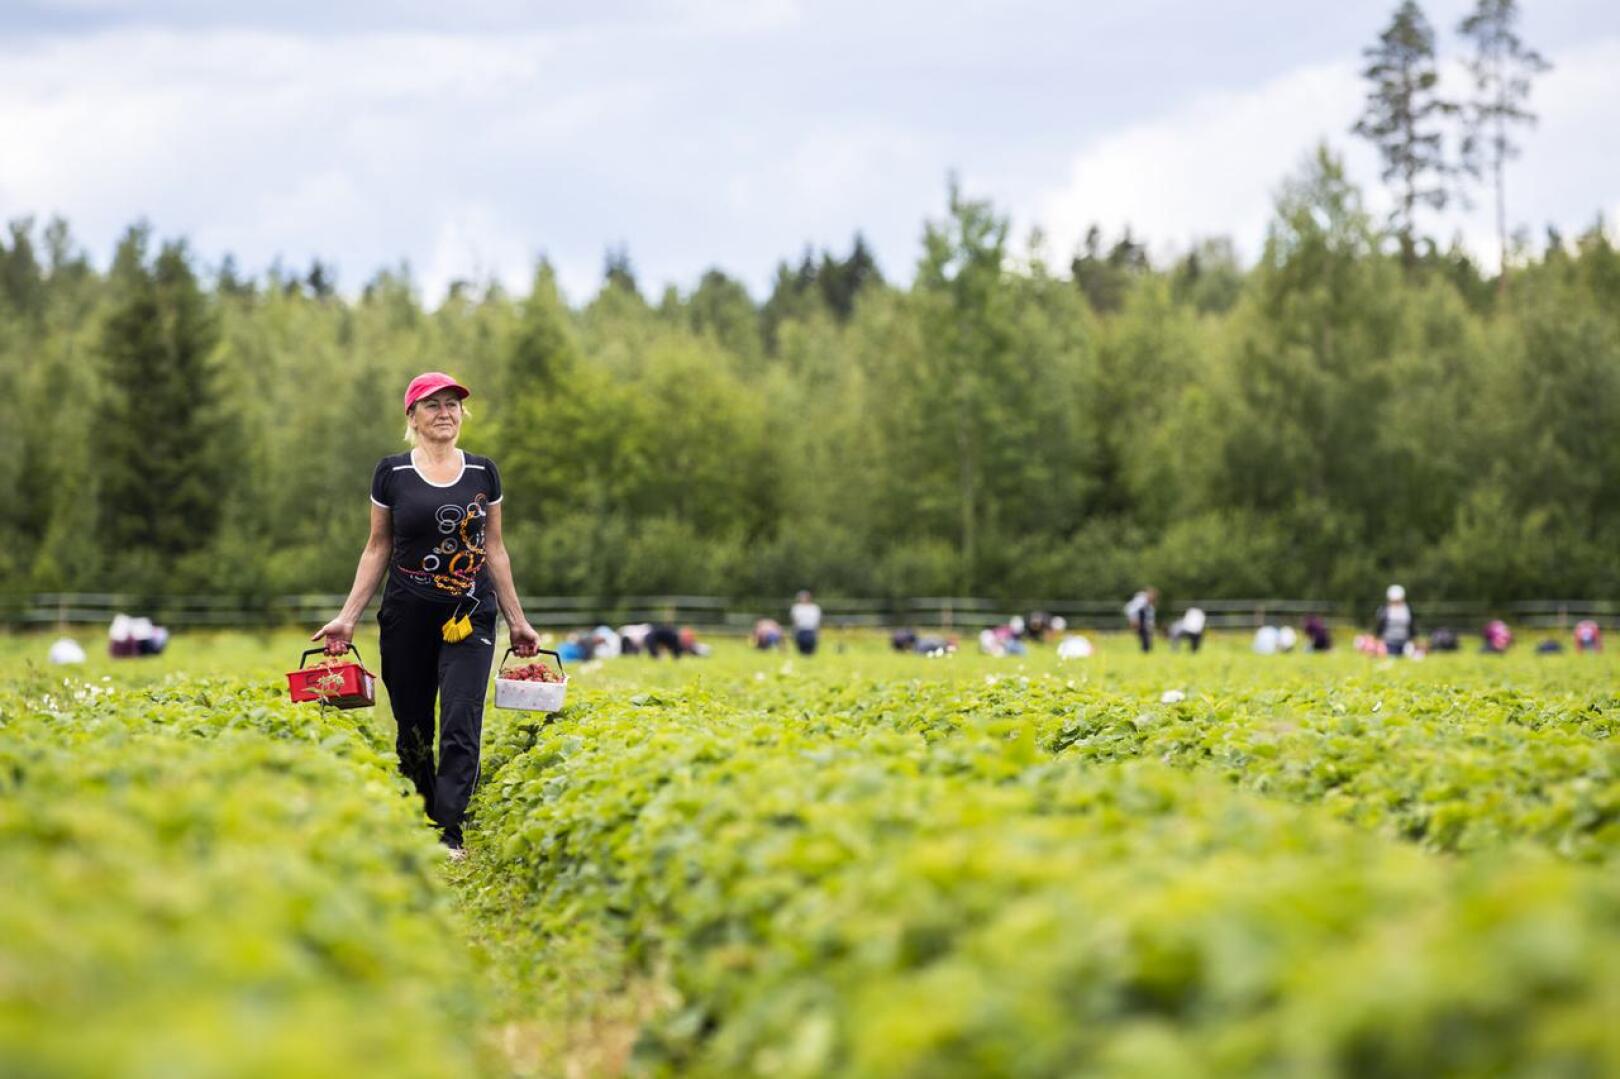 Viime kesänä ukrainalaisia kausityöntekijöitä riitti. Sairaanhoitaja Svetlana Kleochkina oli tullut Suomeen poimimaan mansikoita jo 11 kesänä.